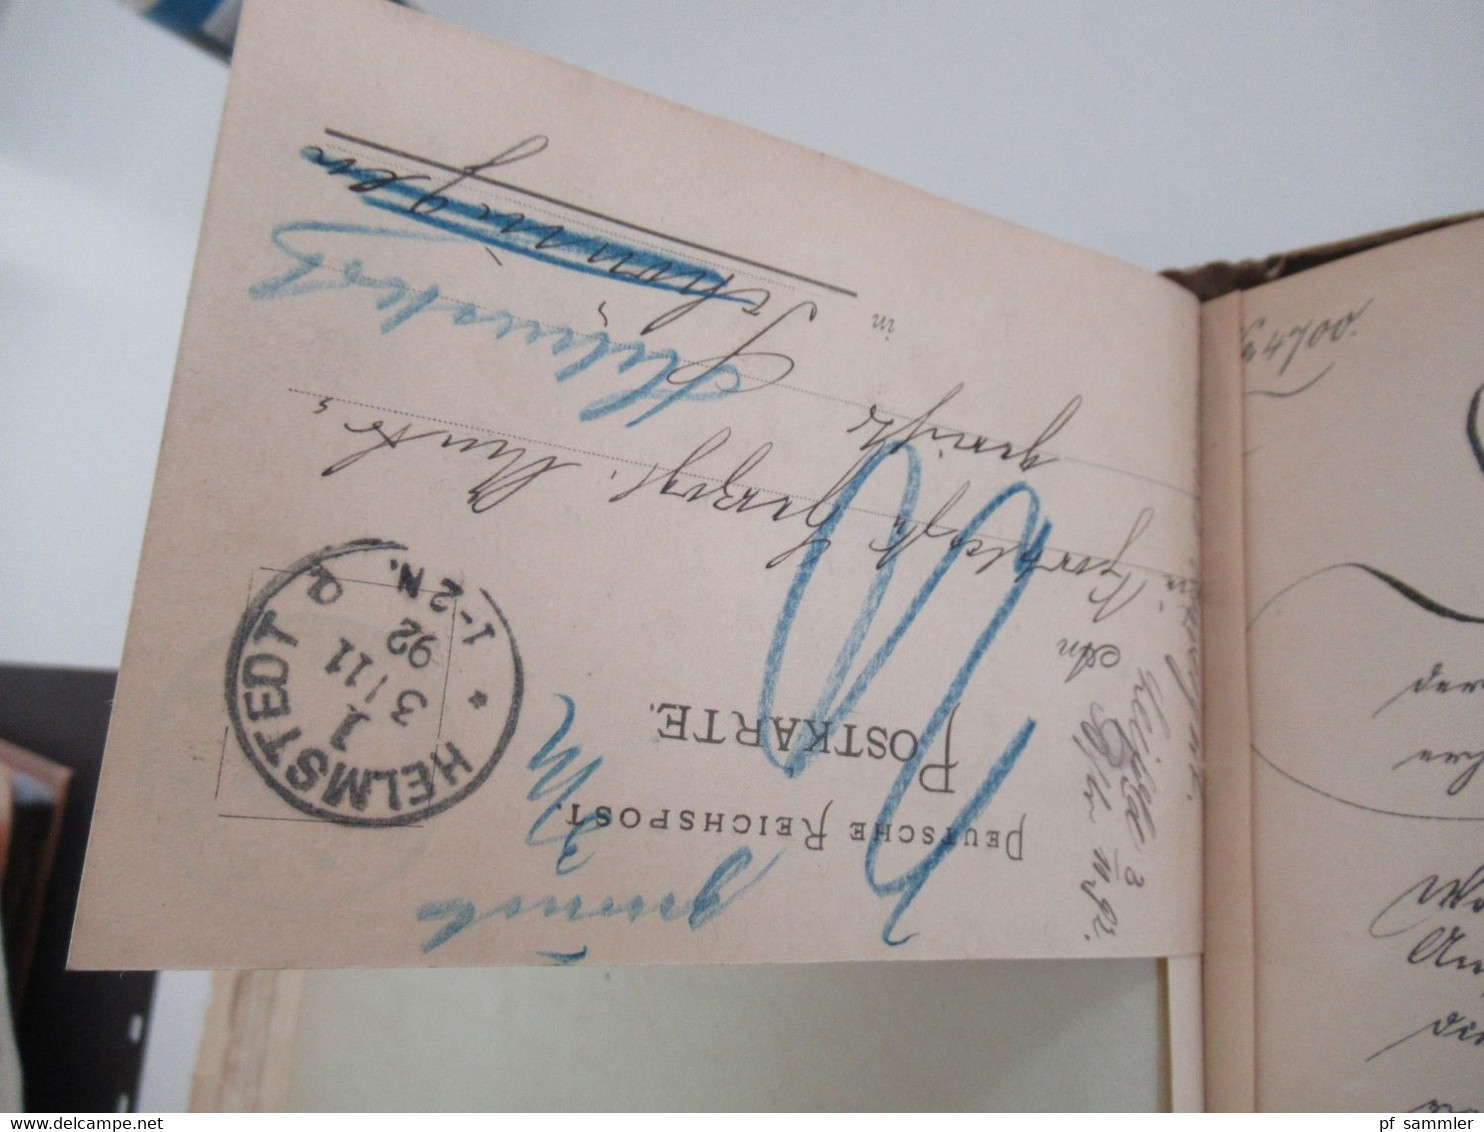 AD Braunschweig Akten betreffend Porto Verhältnisse 1869 - 1899 Herzogliche Kreisdirektion Helmstedt Dokumente ab 1803